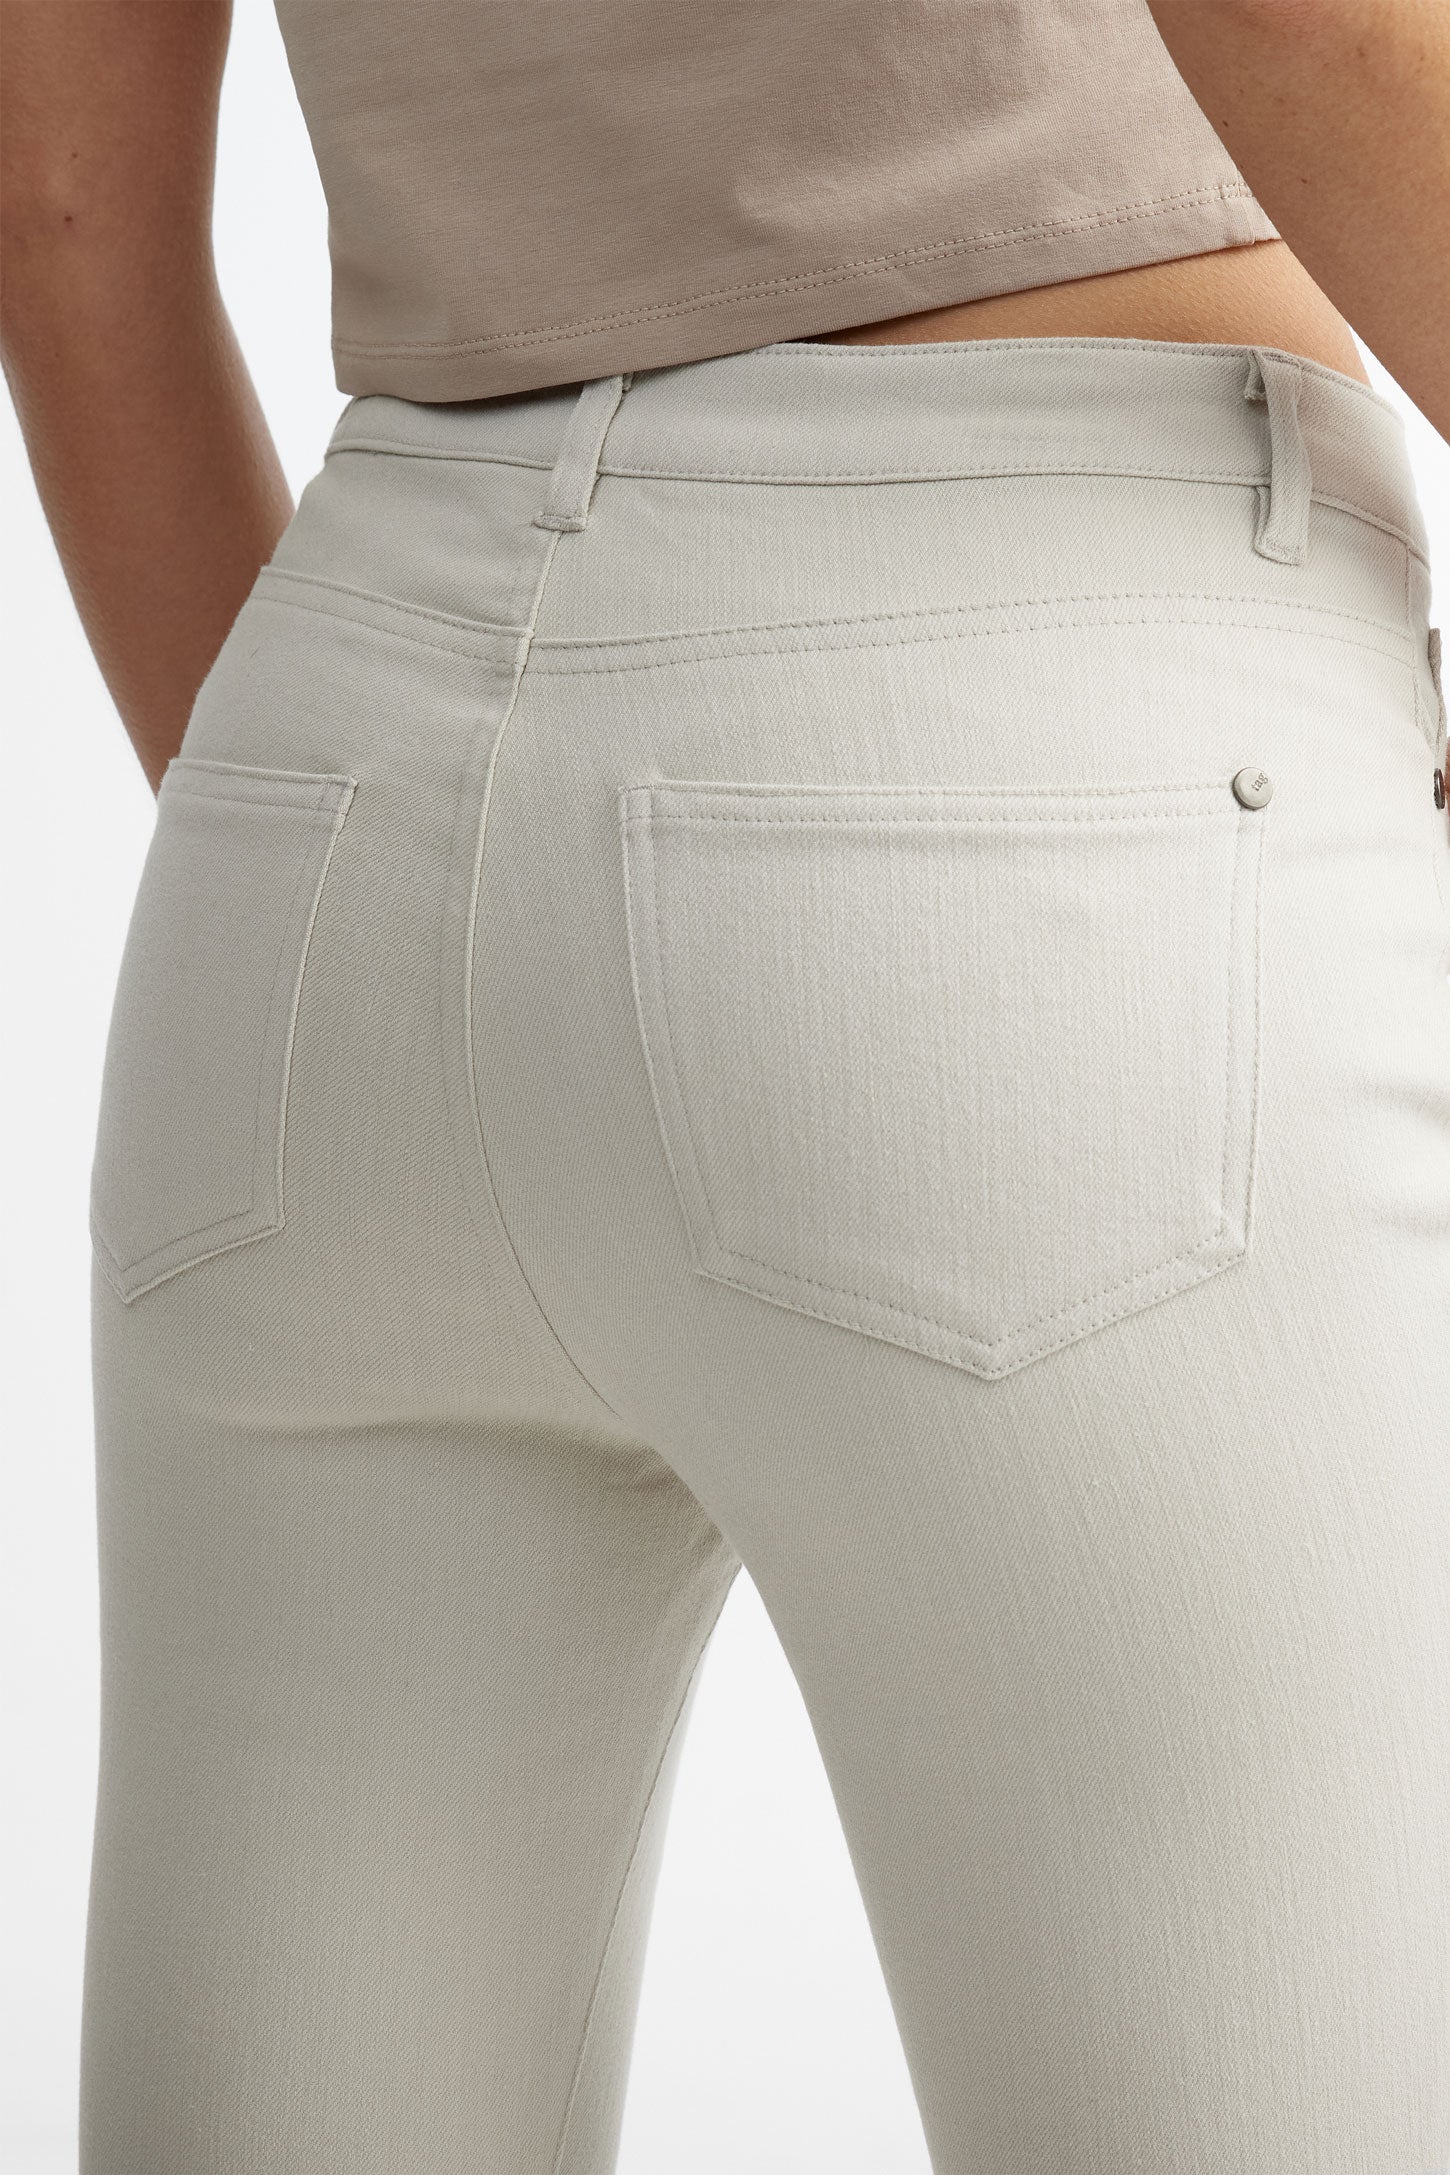 Capri 5 poches coupe ajustée en coton - Femme && BEIGE